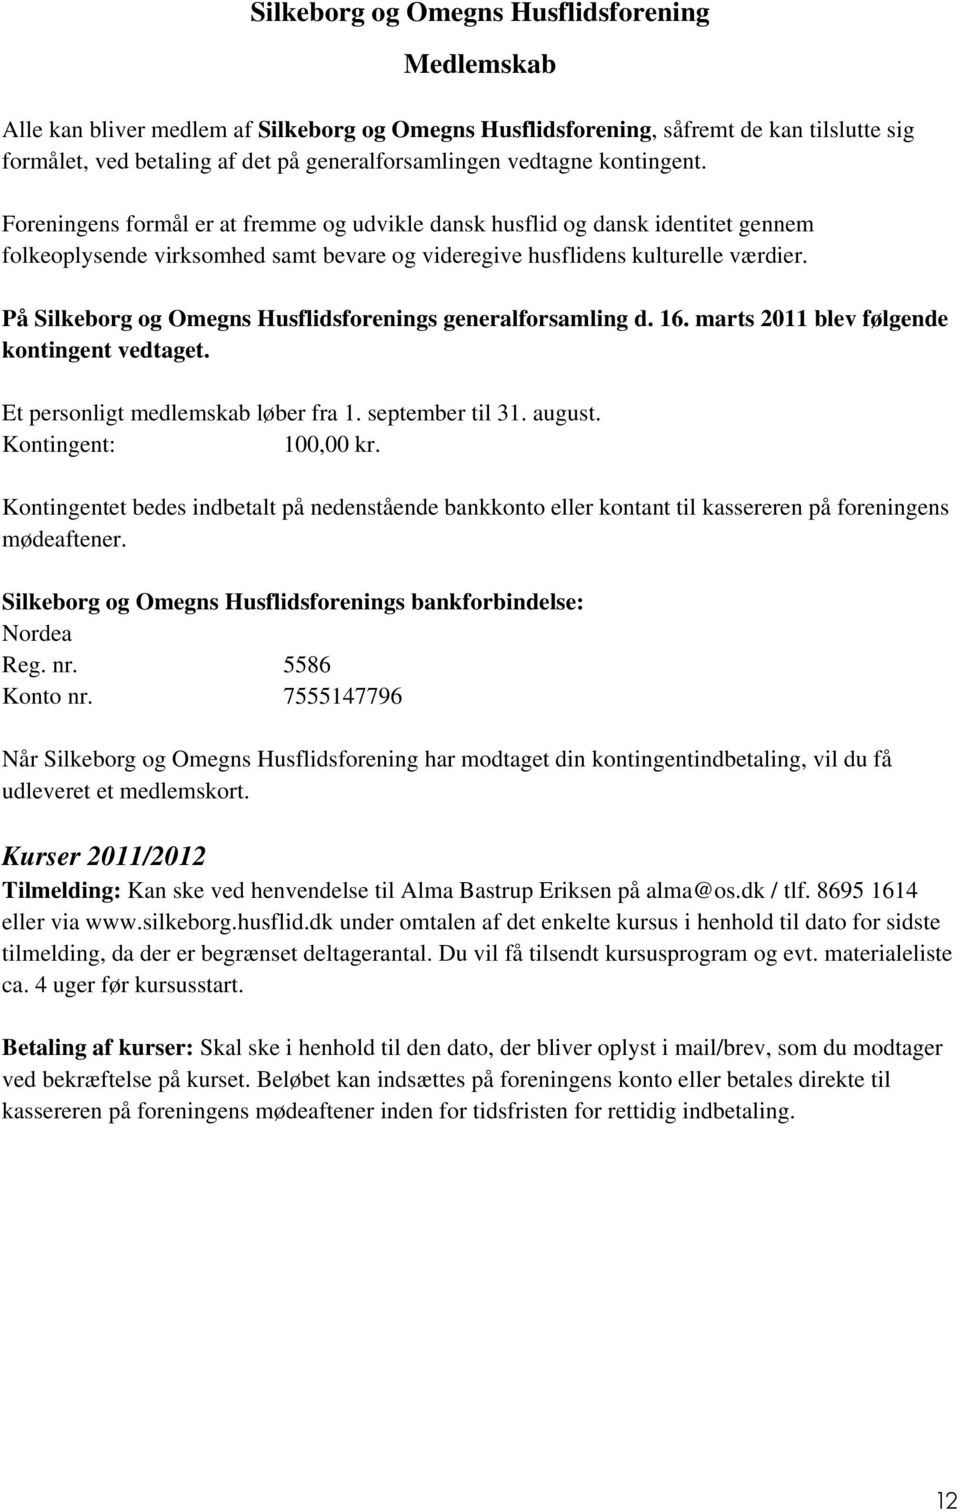 På Silkeborg og Omegns s generalforsamling d. 16. marts 2011 blev følgende kontingent vedtaget. Et personligt medlemskab løber fra 1. september til 31. august. Kontingent: 100,00 kr.